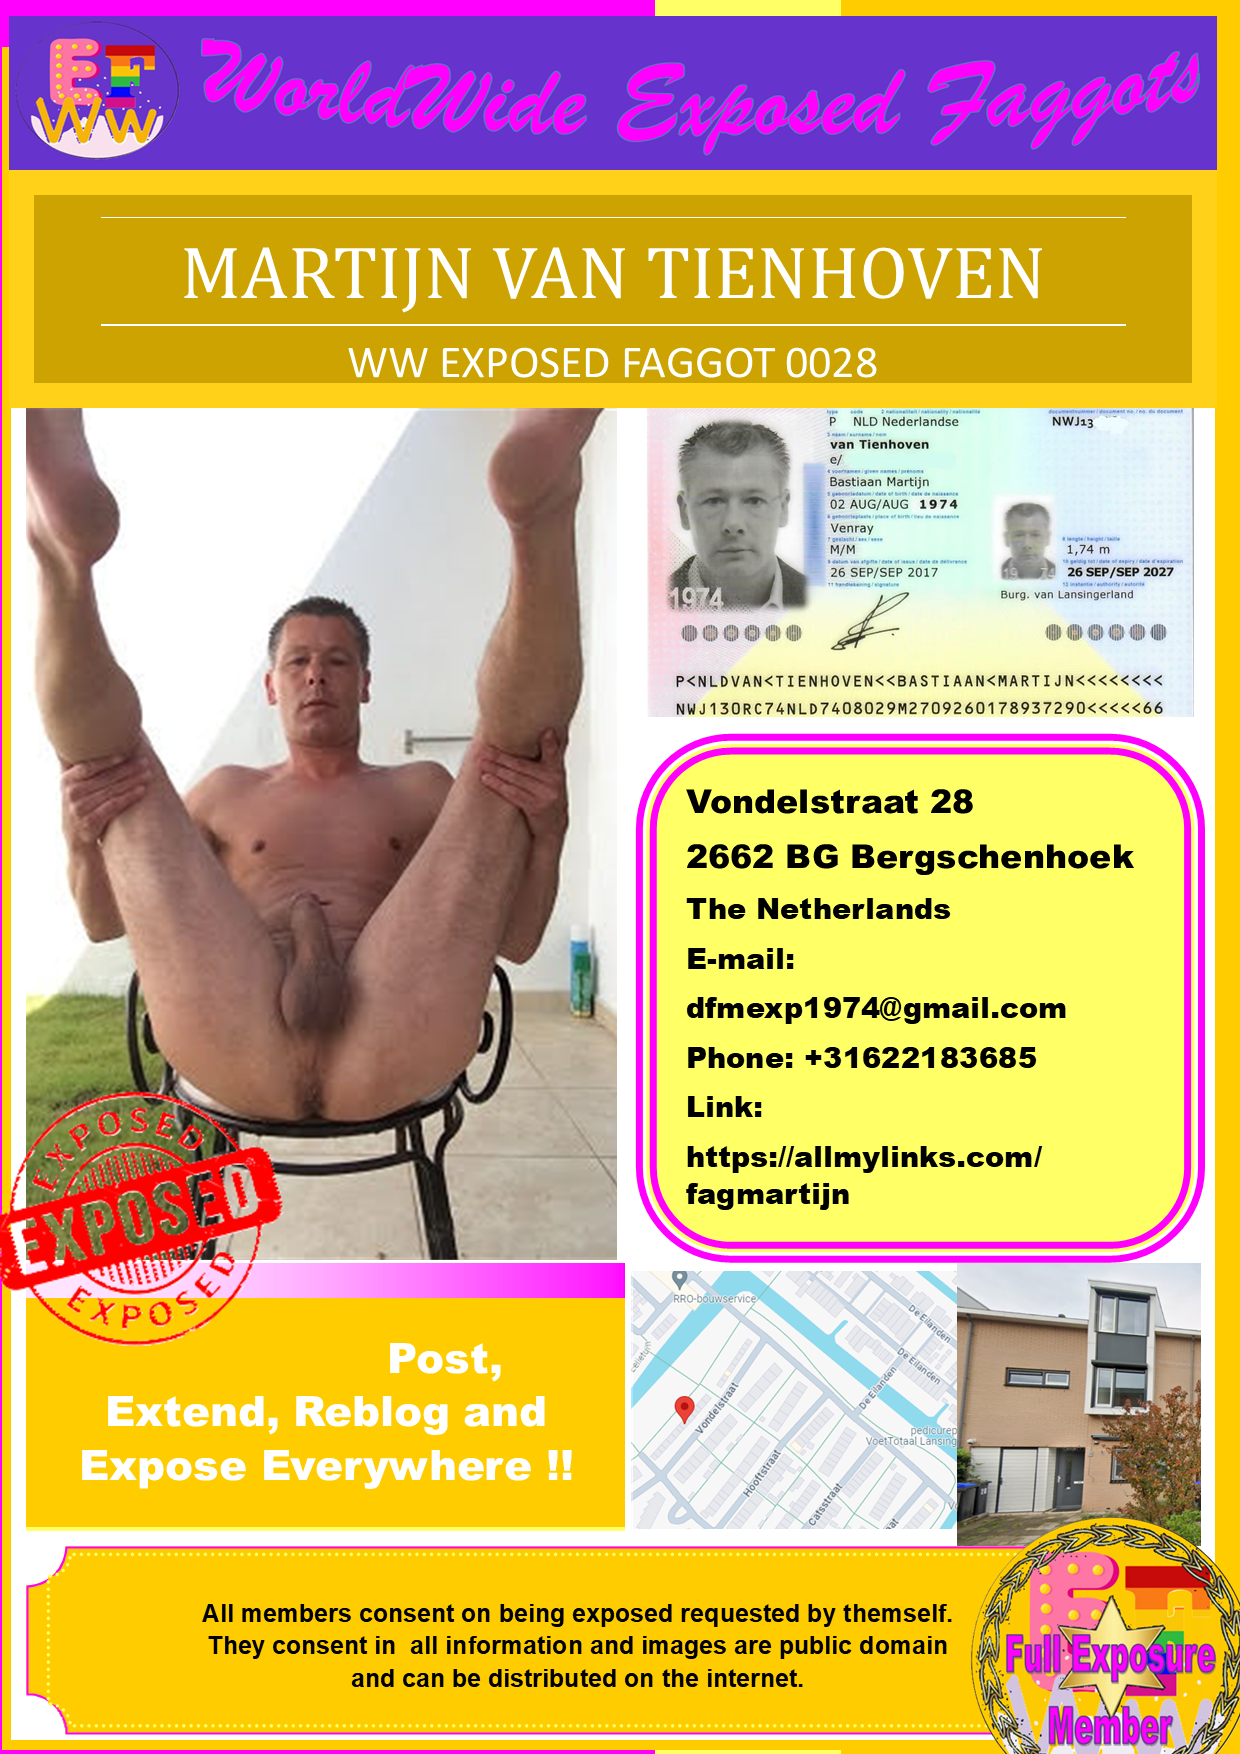 0028 - Martijn van Tienhoven